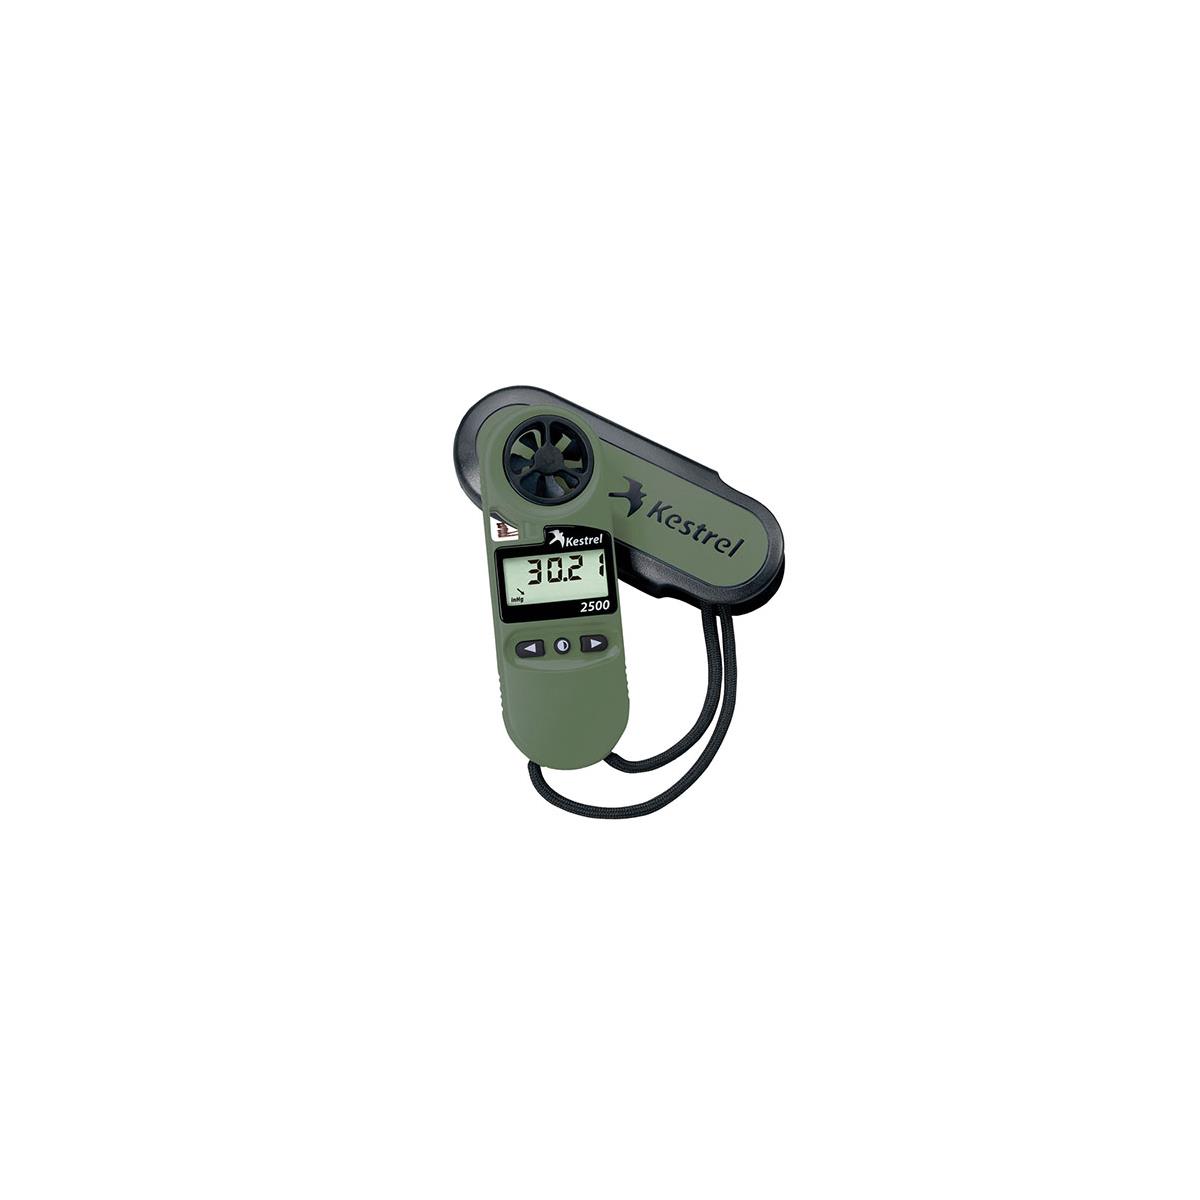 Image of Kestrel 2500 Night Vision Waterproof Wind Meter/Digital Altimeter